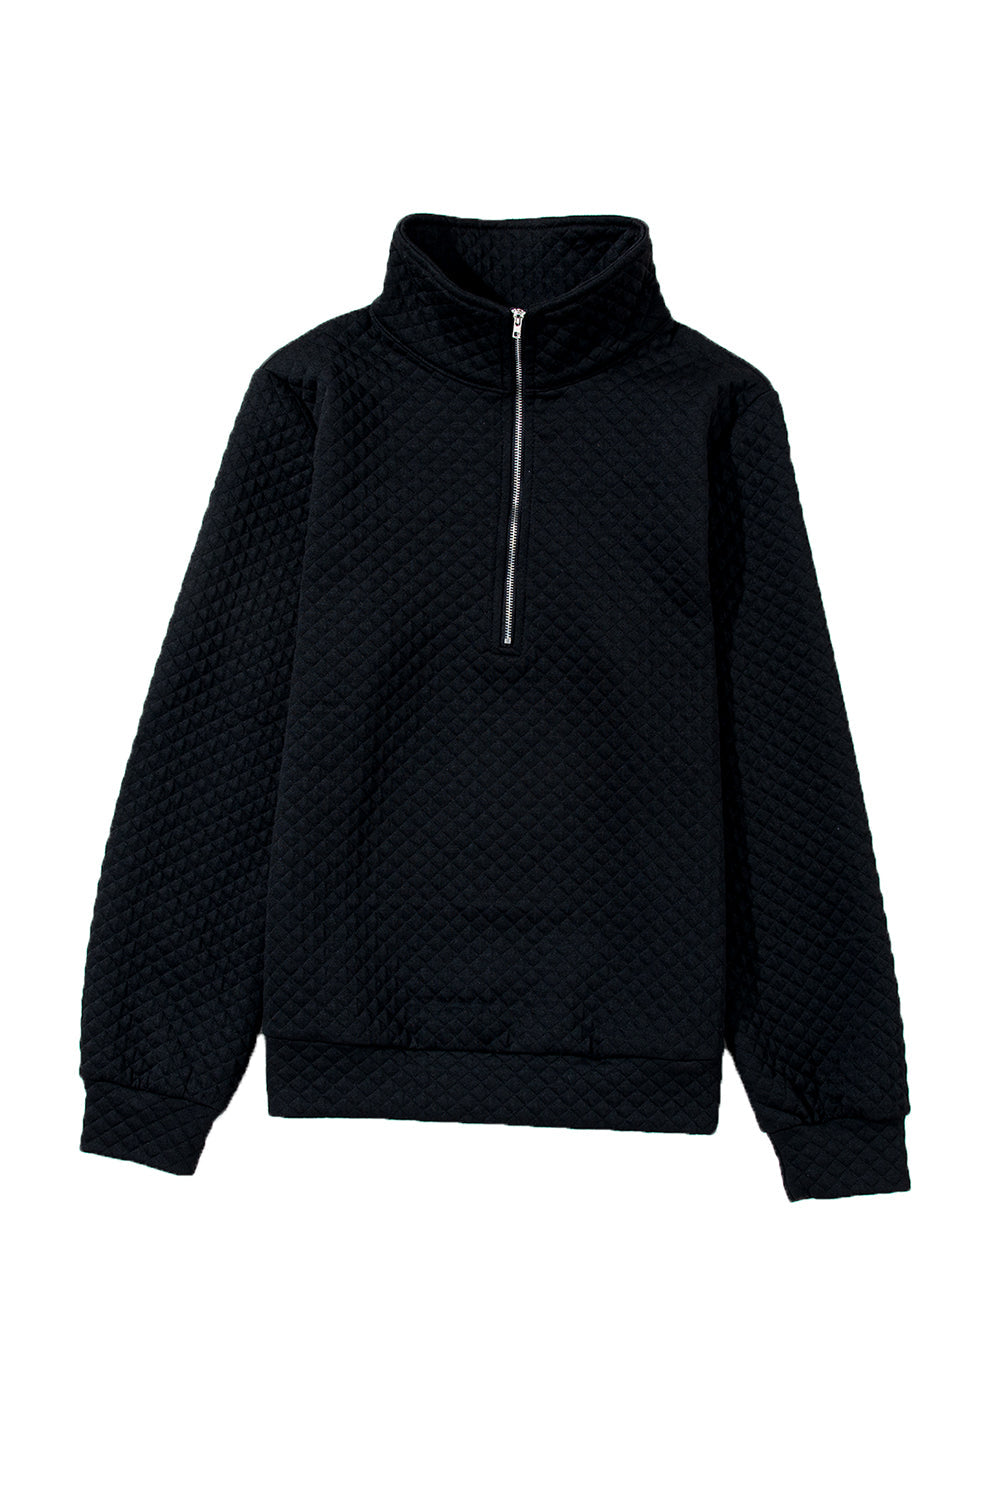 Black Solid Half Zipper Quilted Pullover Sweatshirt-11